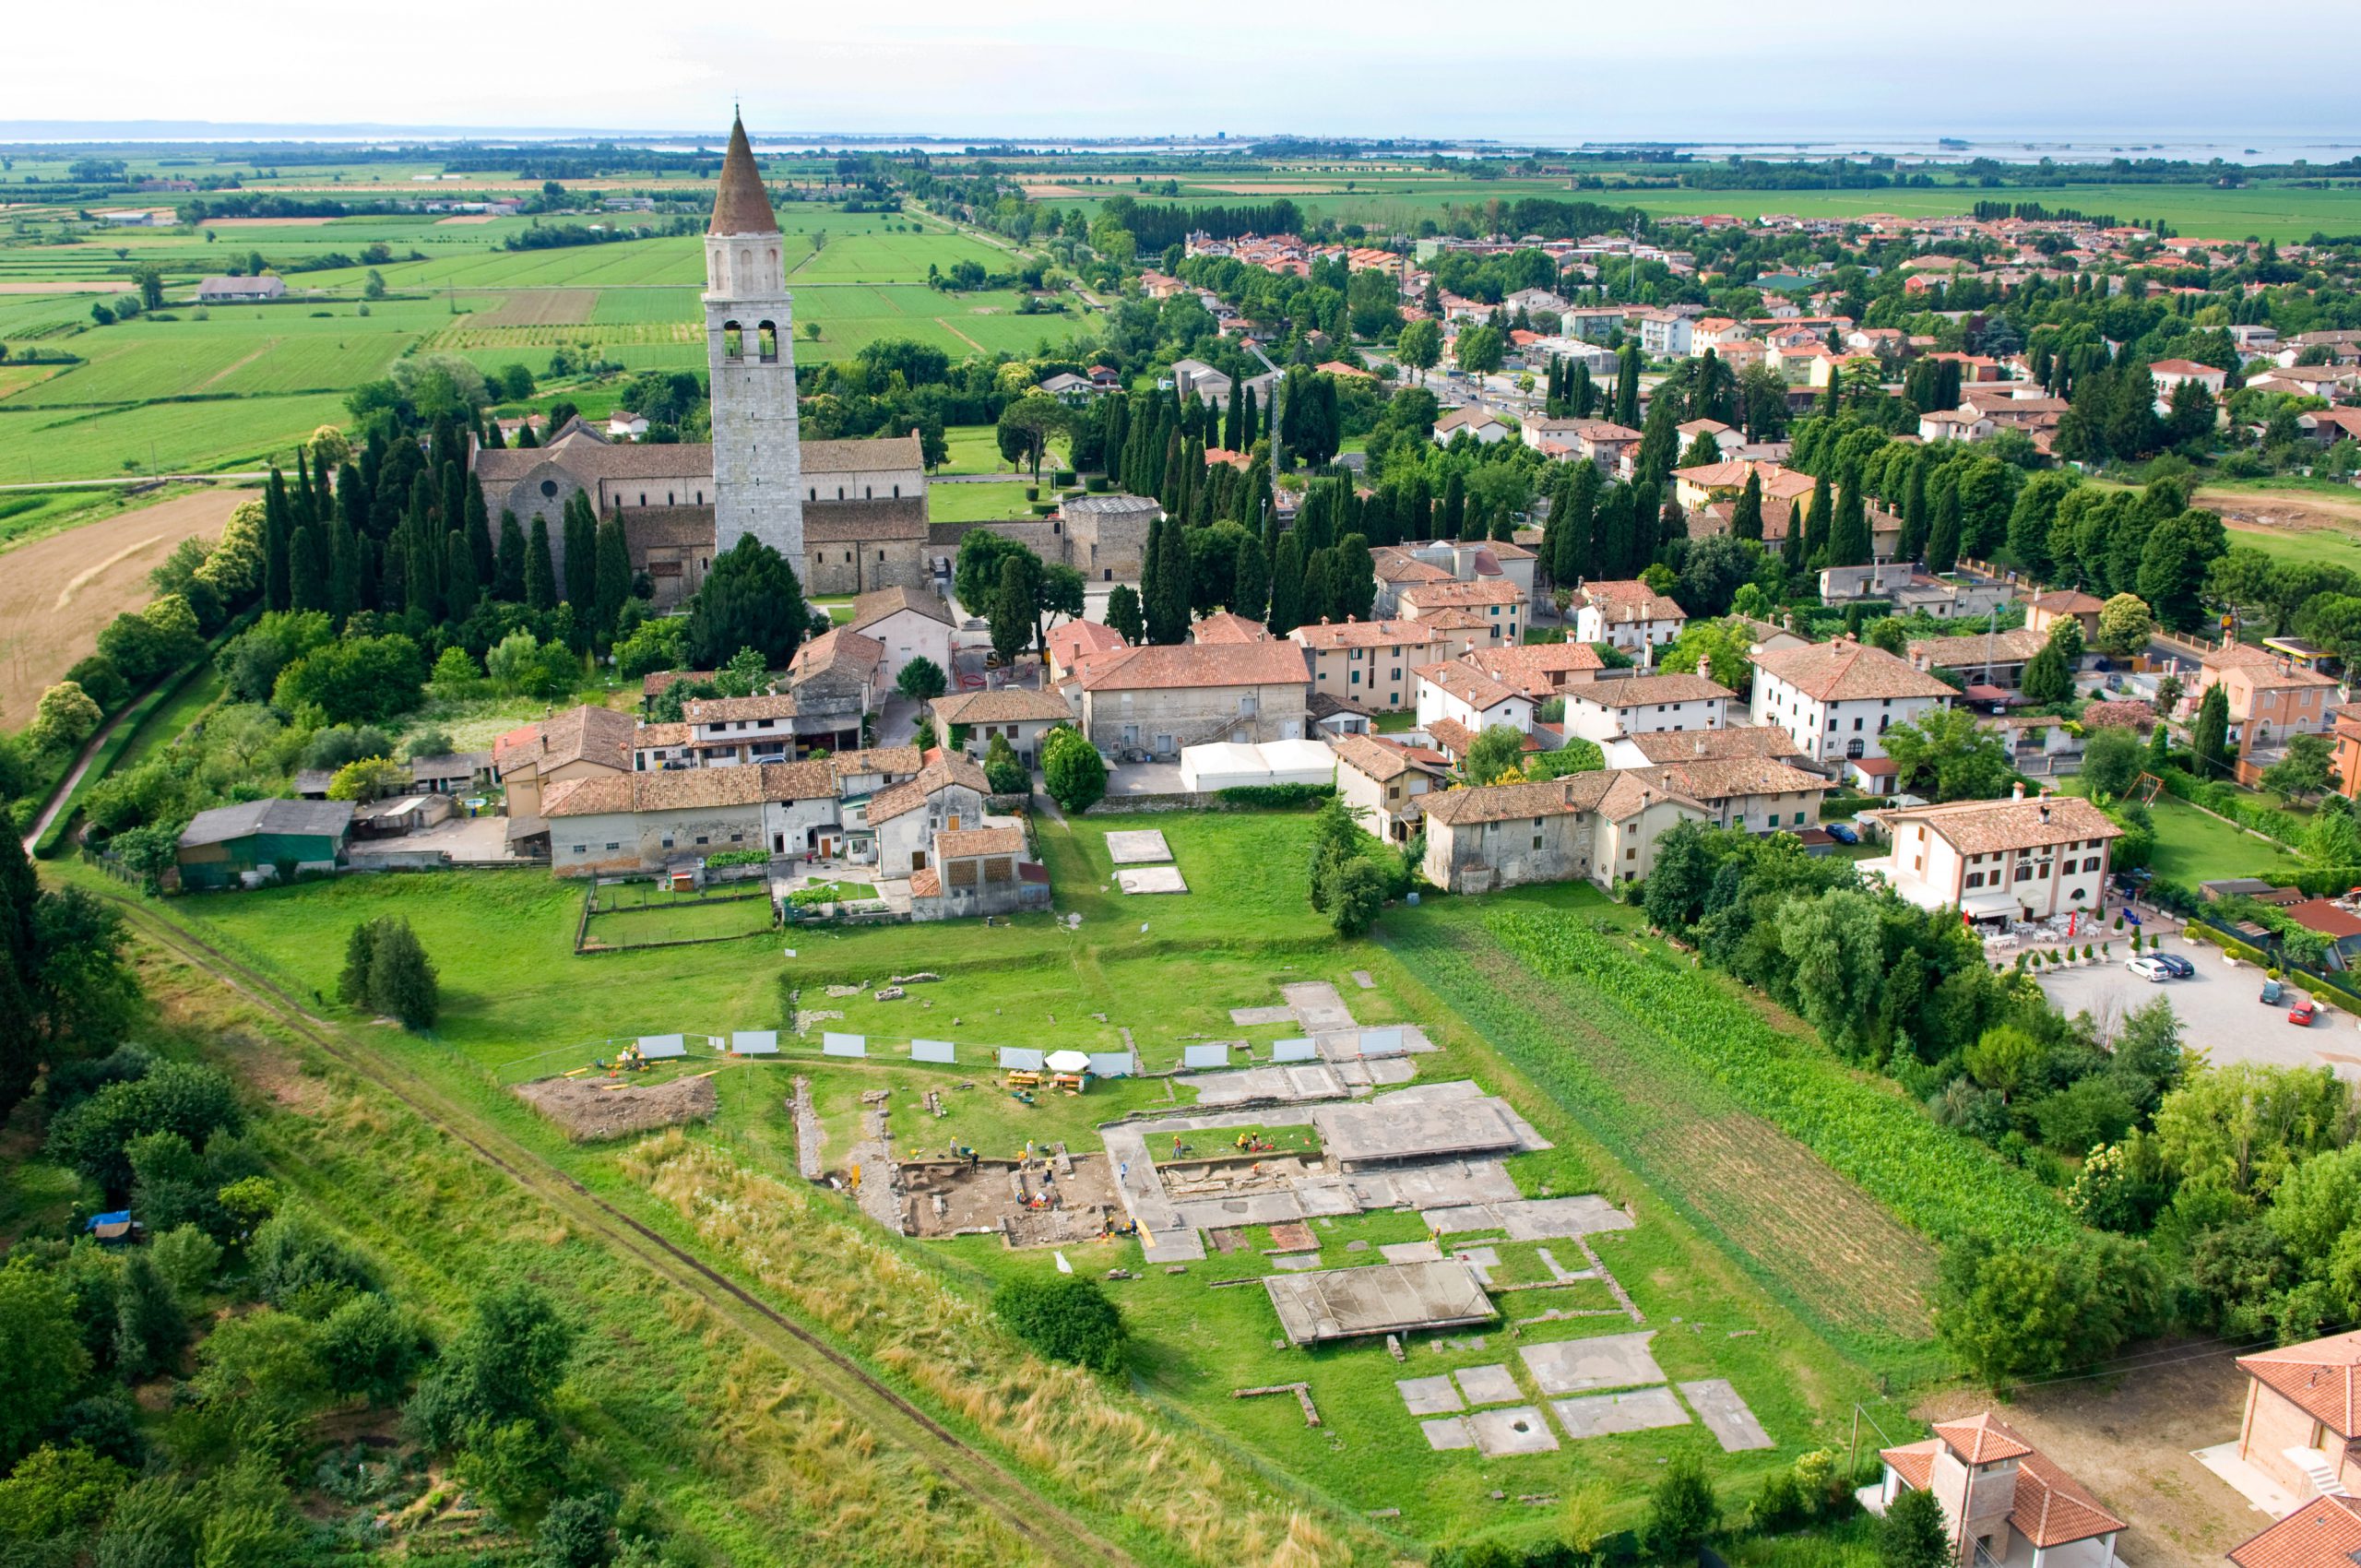 Fietsen en cultuur gecombineerd - bezoek de sporen van de Romeinen in Aquileia, het "tweede Rome"